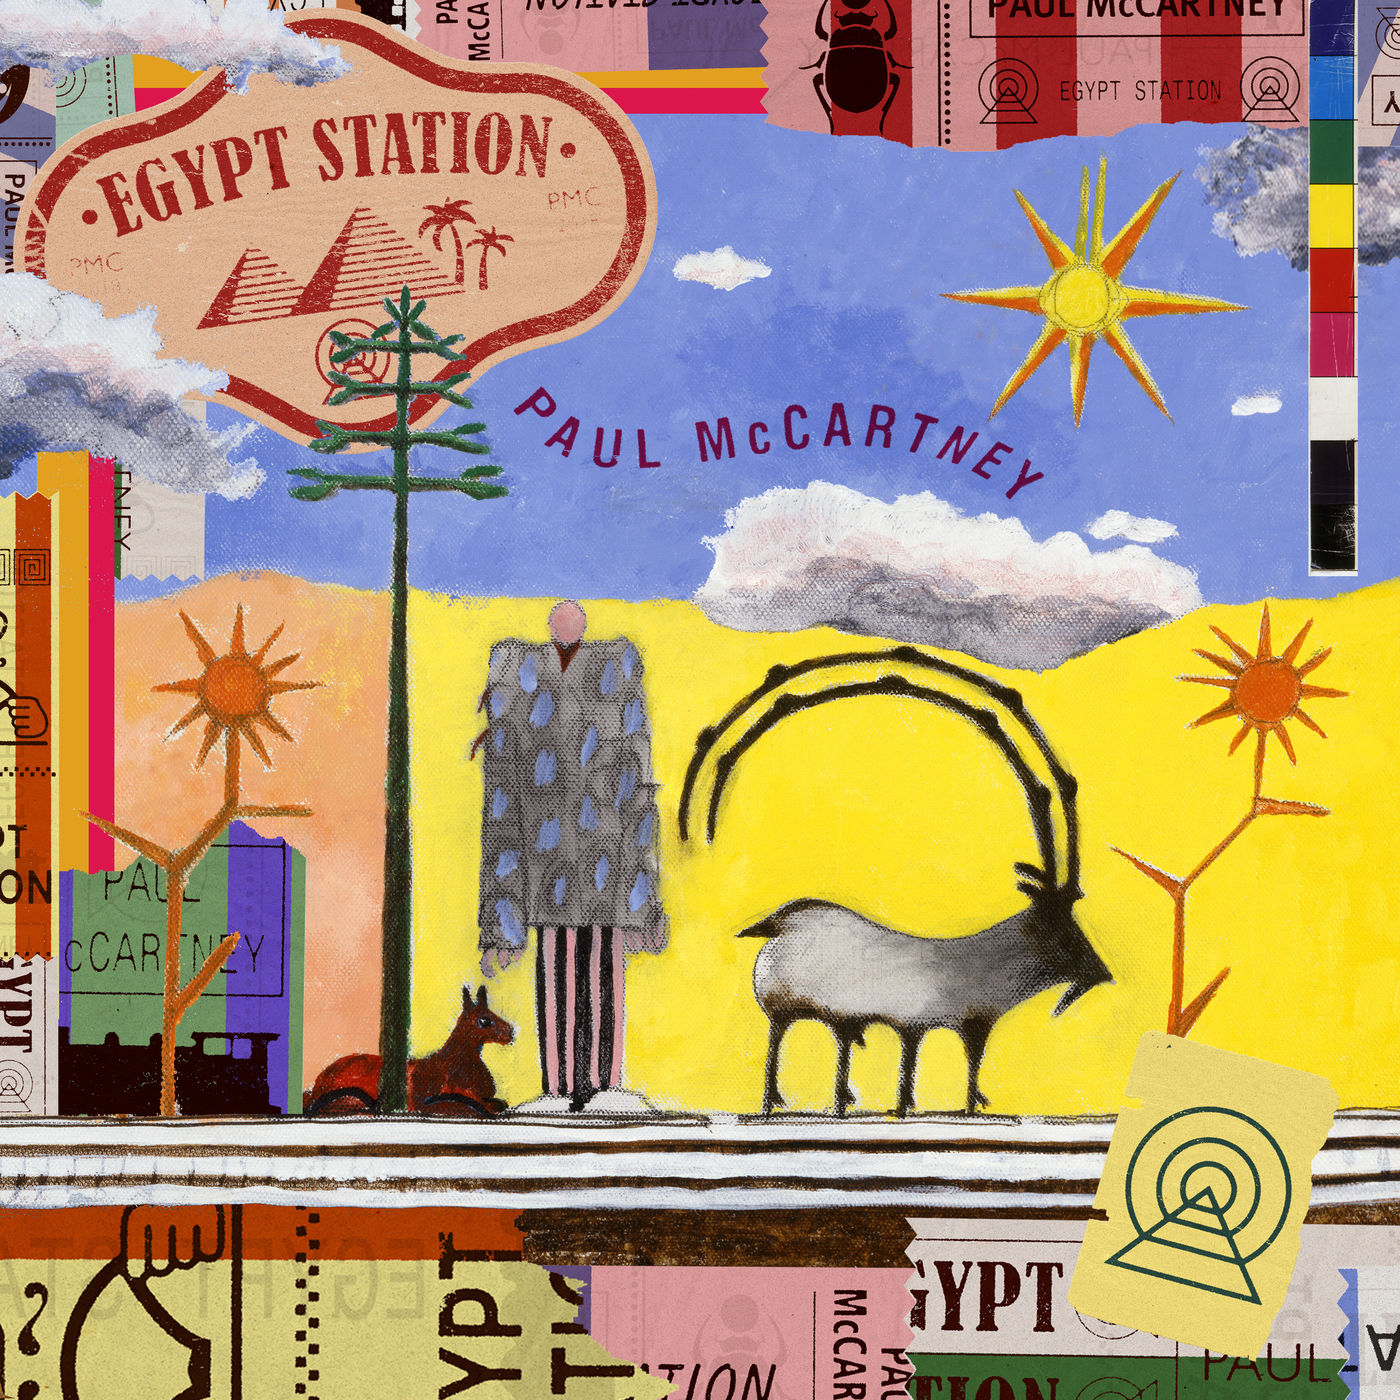 Paul McCartney - Egypt Station (2018) Album Info